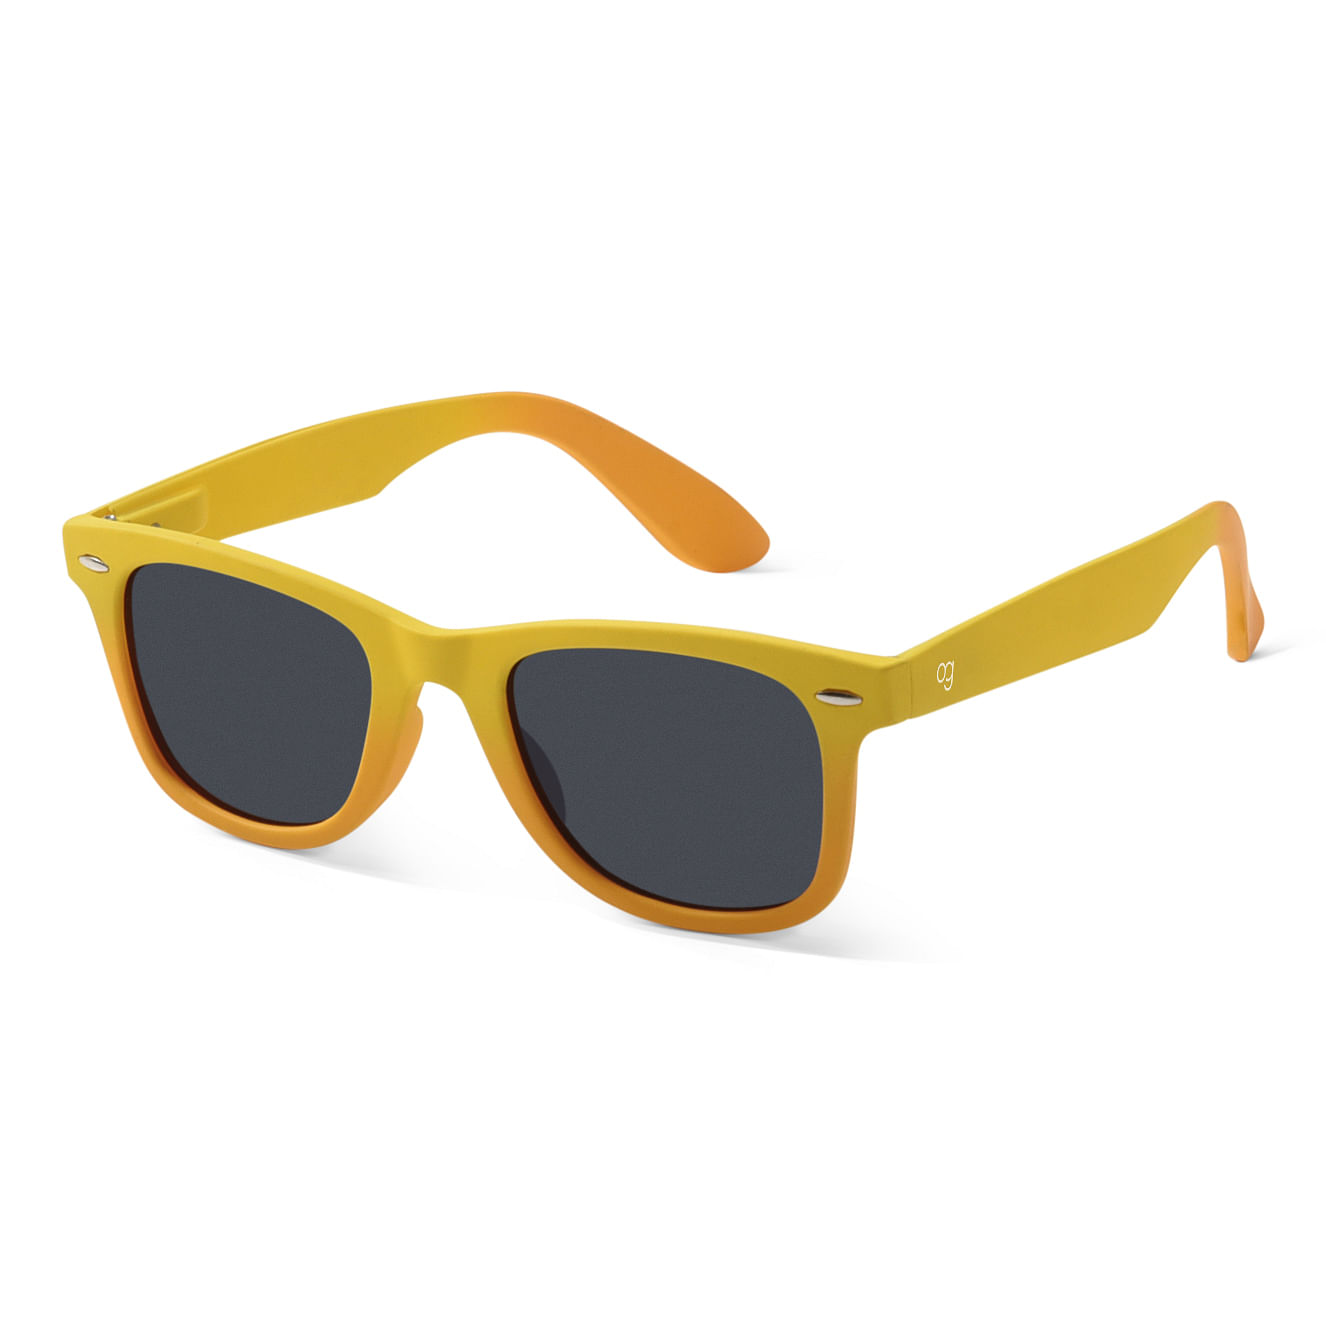 Buy PIRASO Wayfarer Sunglasses Black For Men & Women Online @ Best Prices  in India | Flipkart.com